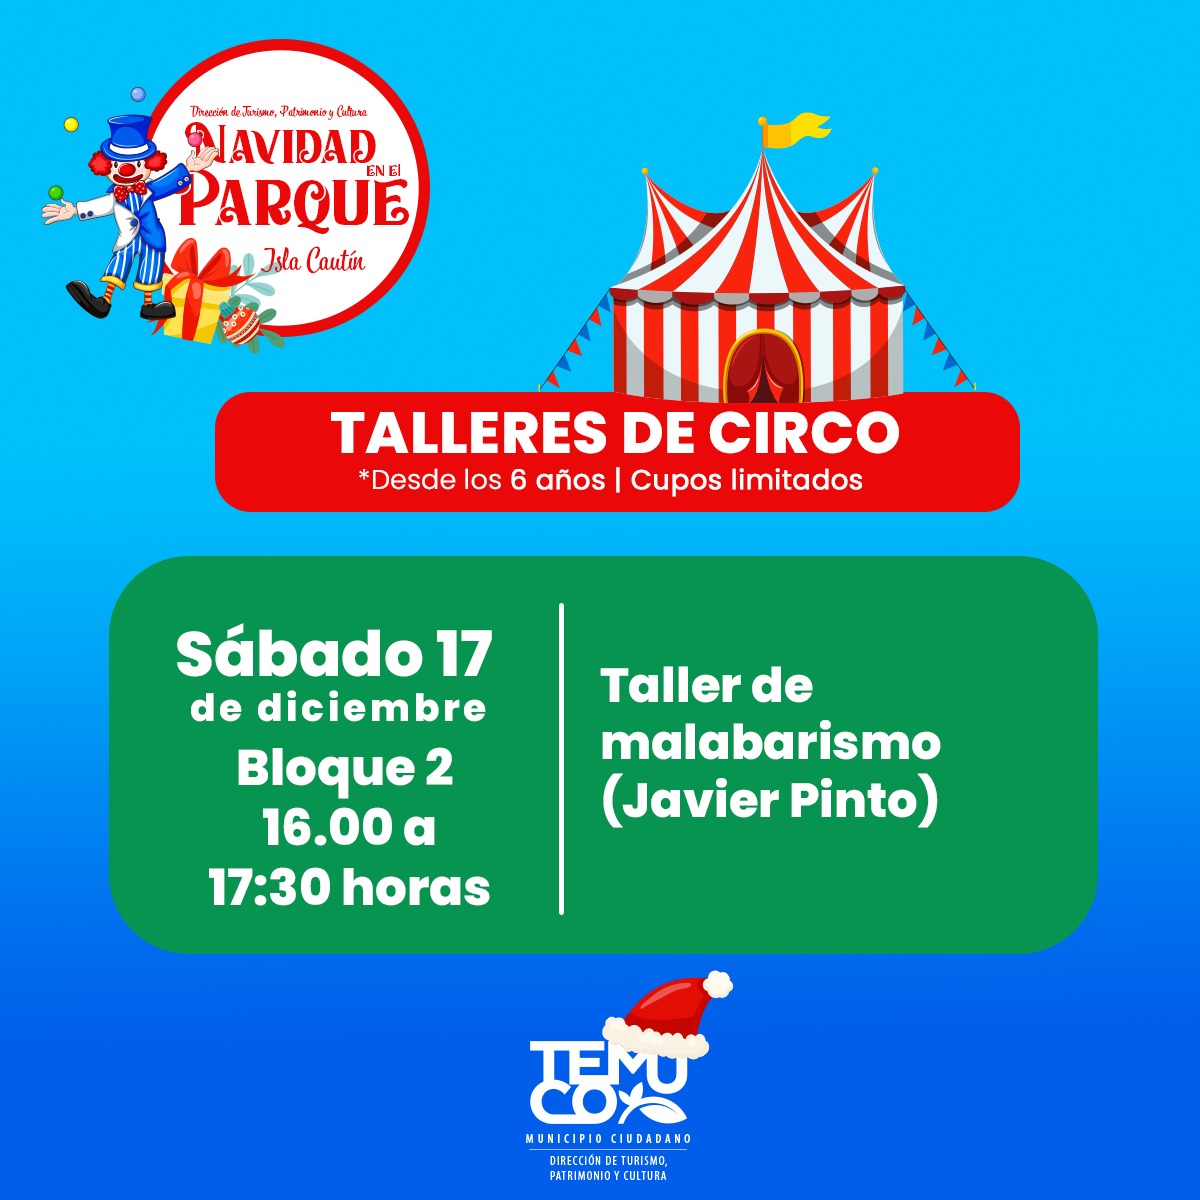 Taller de malabarismo - Sábado 17 de diciembre de 16:00 a 17:30 horas -  Turismo Temuco